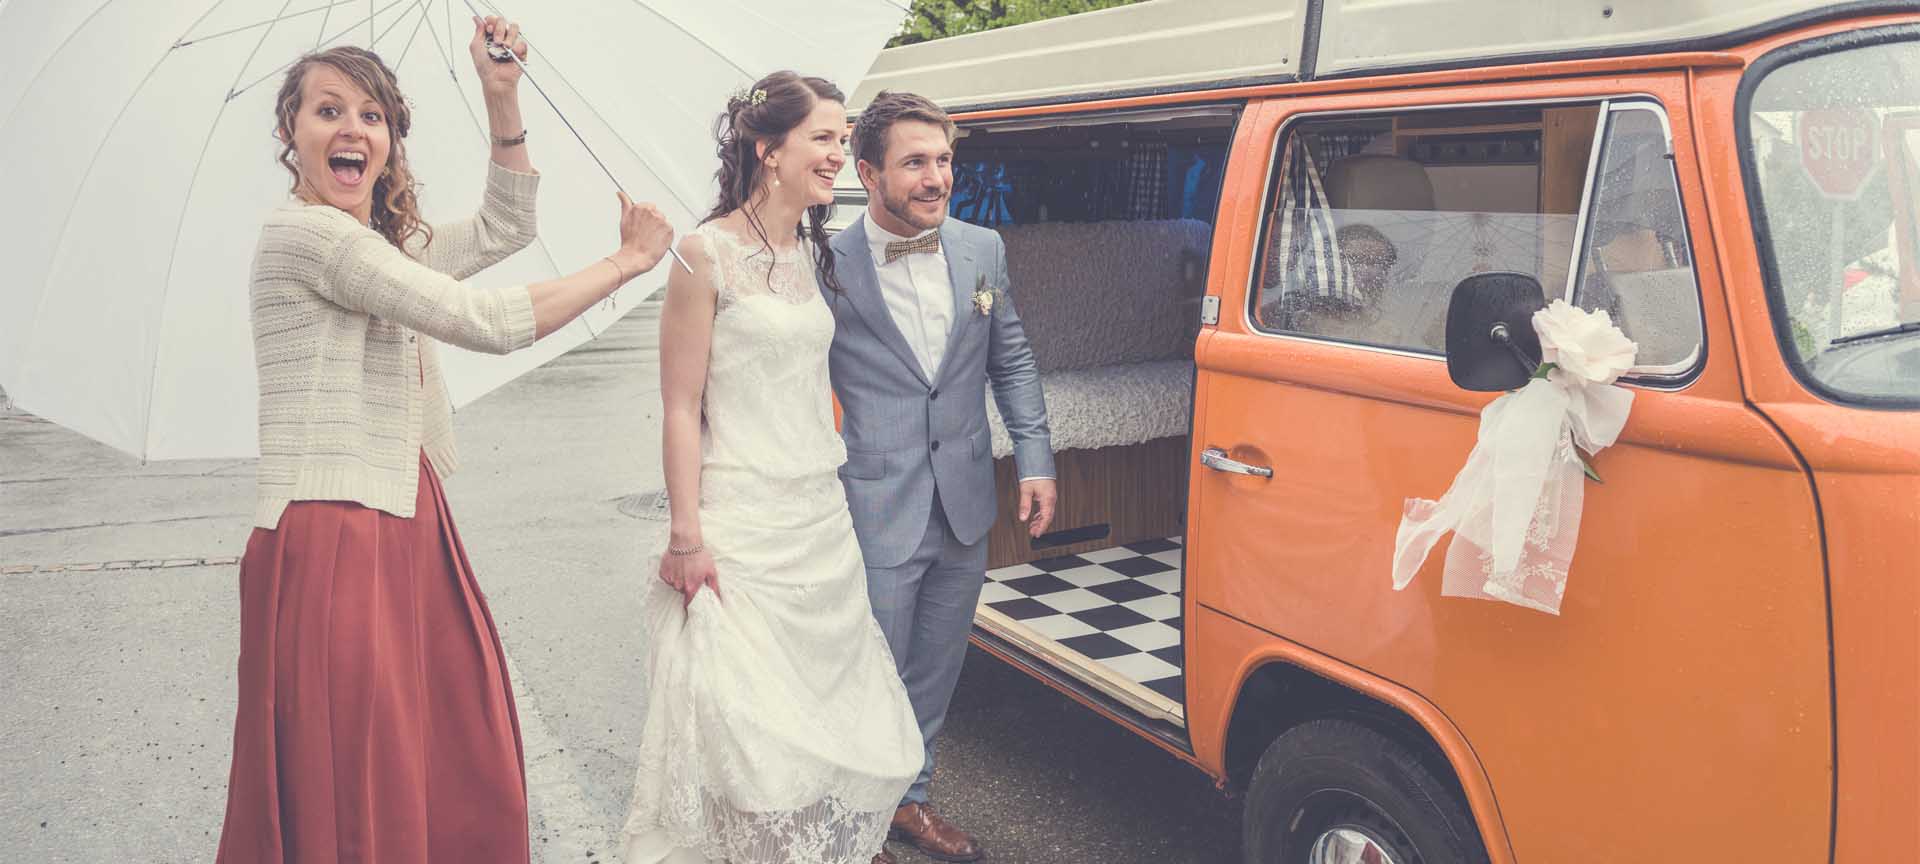 mariés souriants montent dans vieux bus VW avec chauffeur et sol à carreaux noirs et blancs